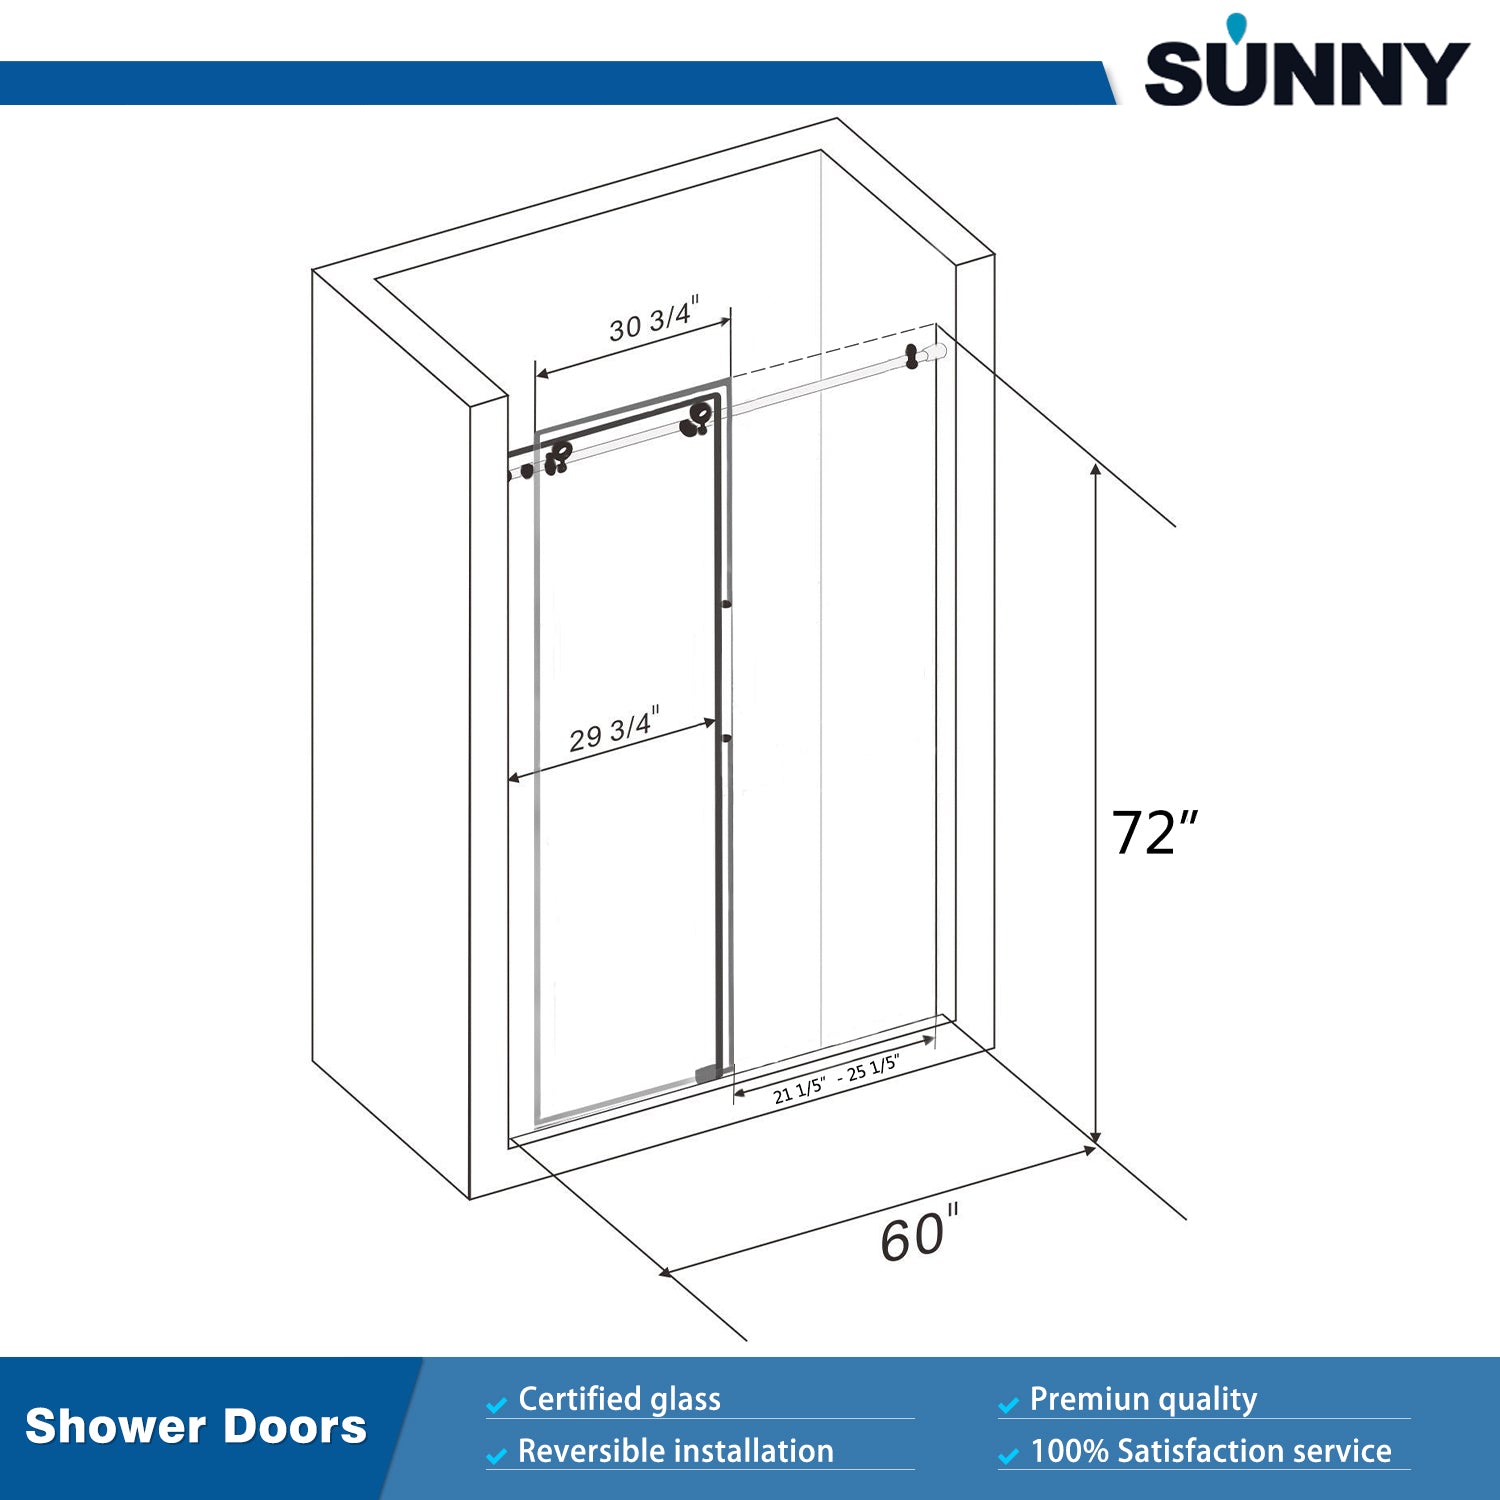 SUNNY SHOWER 60 in. W x 72 in. H Frameless Chrome Finish Sliding Shower Doors Overhead View - SUNNY SHOWER